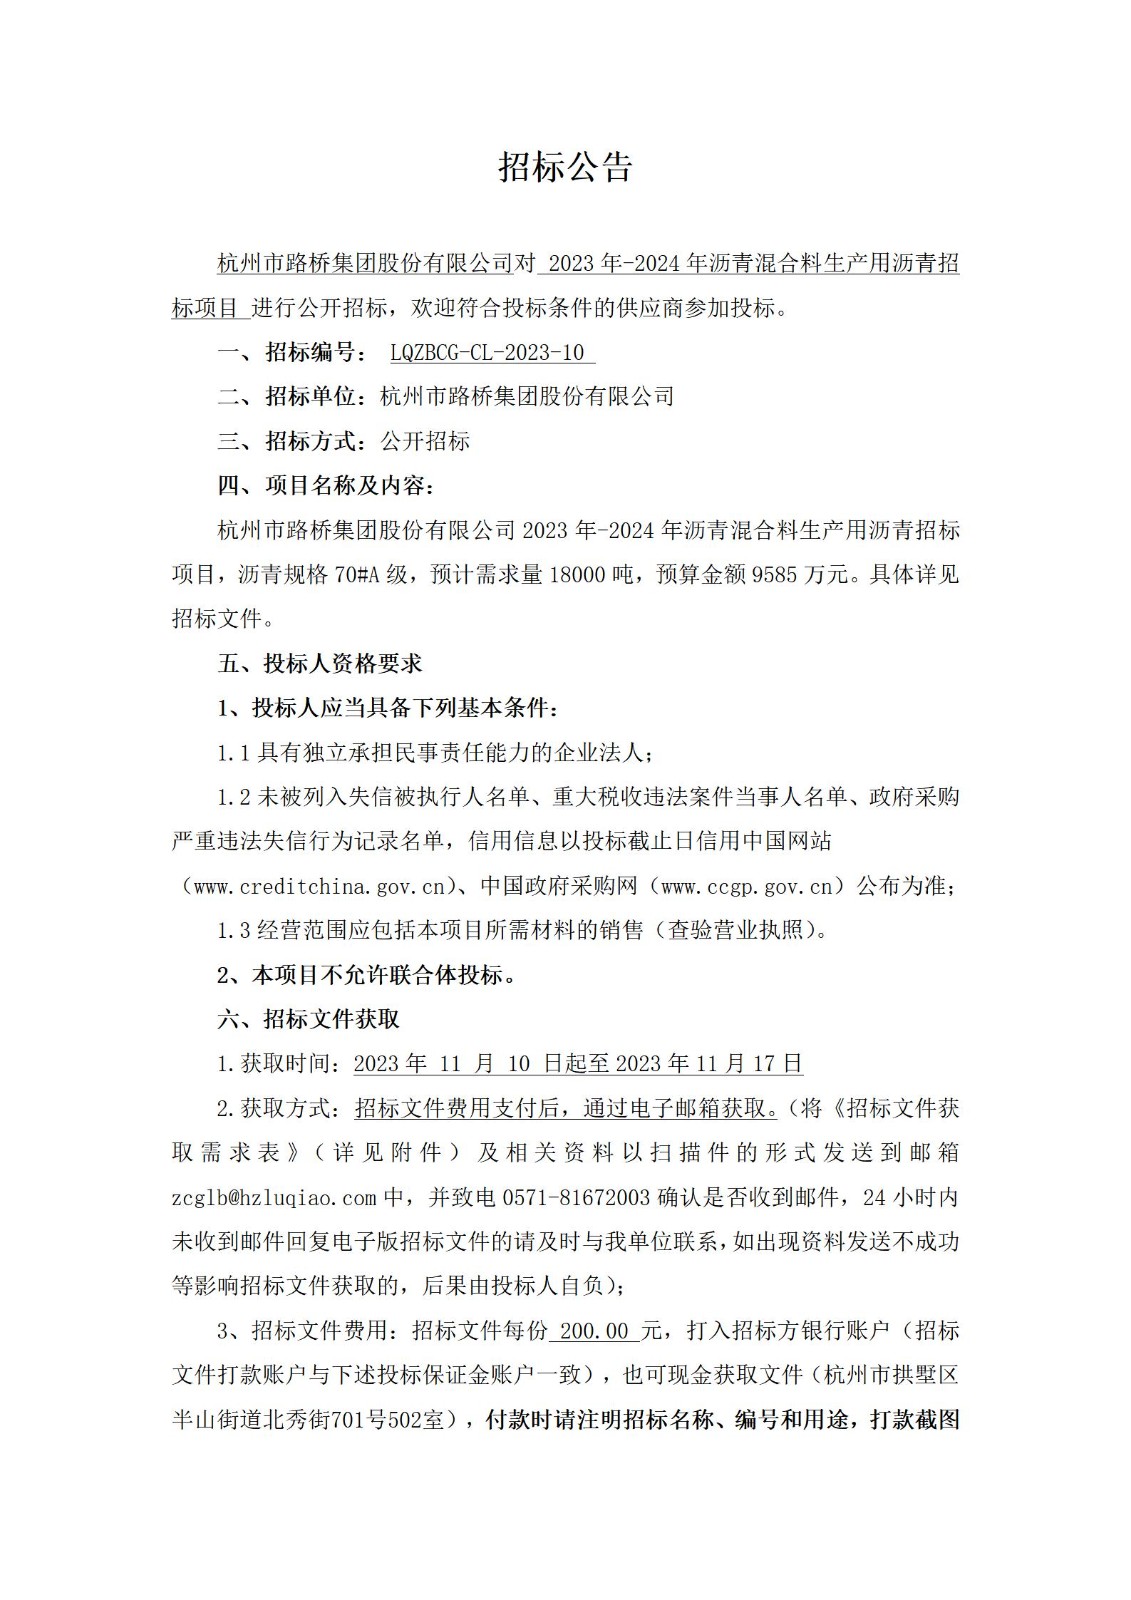 招标公告：杭州市路桥集团股份有限公司2023年-2024年青混合料生产用沥青招标项目_01.jpg